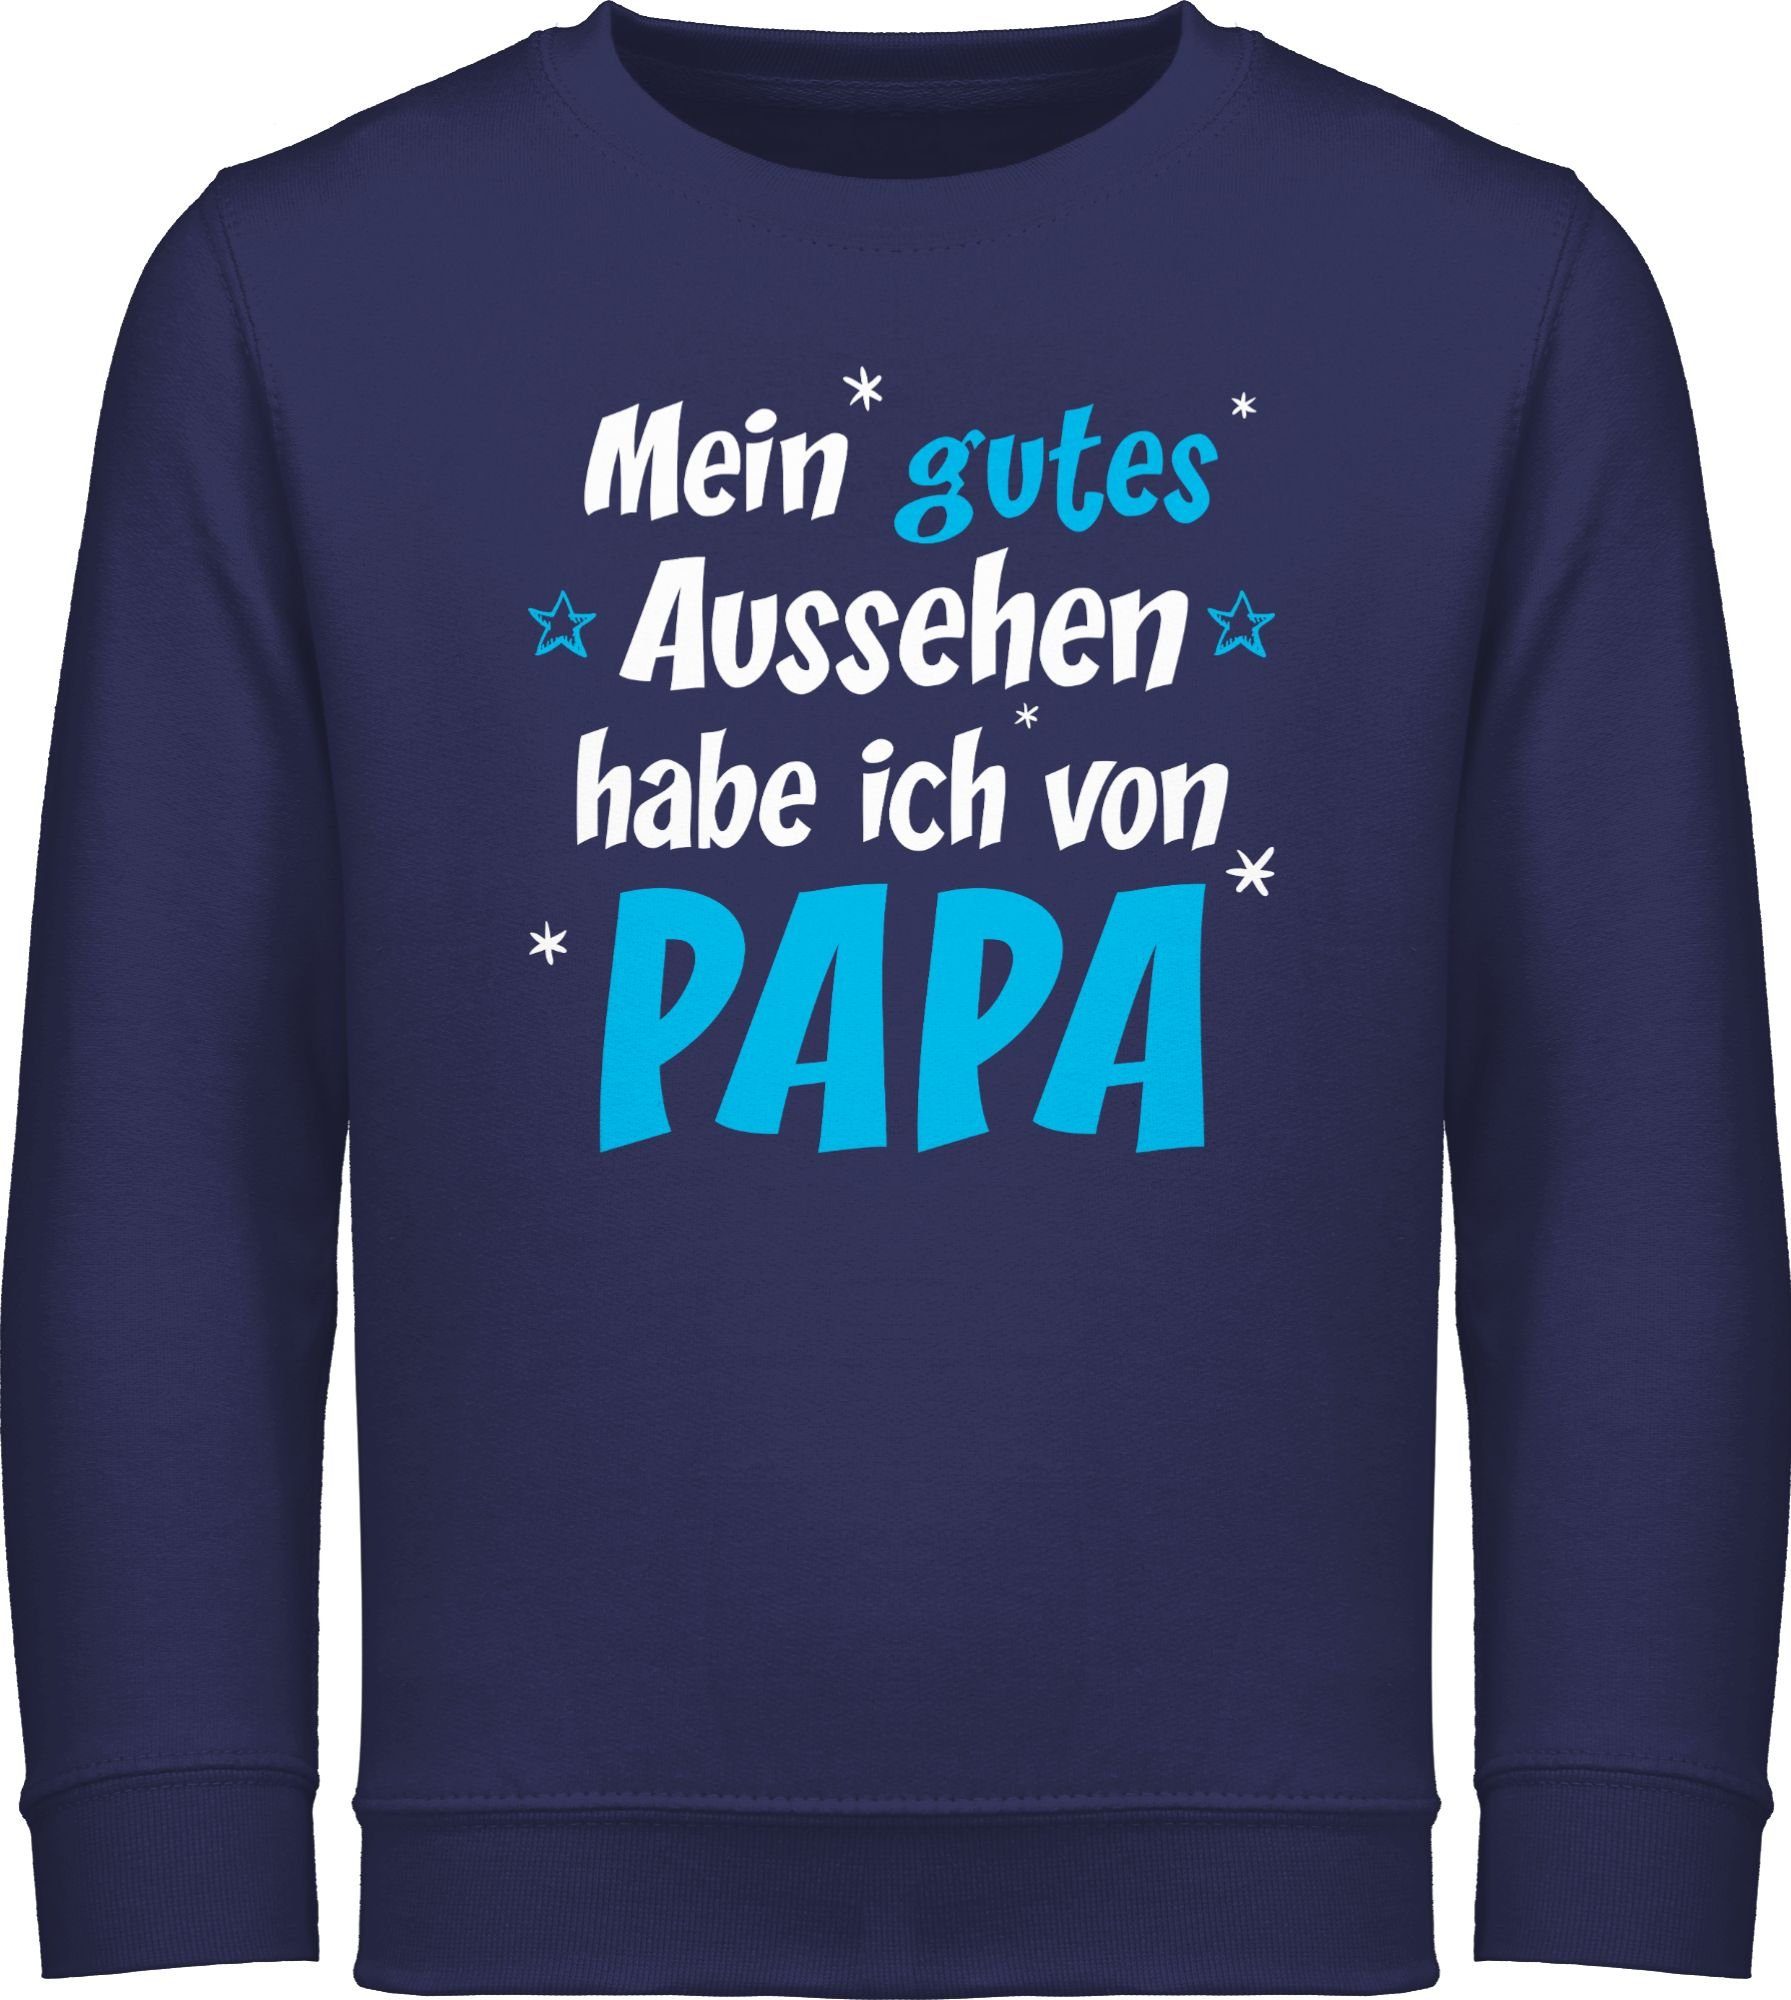 Shirtracer Sweatshirt Mein gutes Aussehen Papa Junge Statement Sprüche Kinder 1 Navy Blau